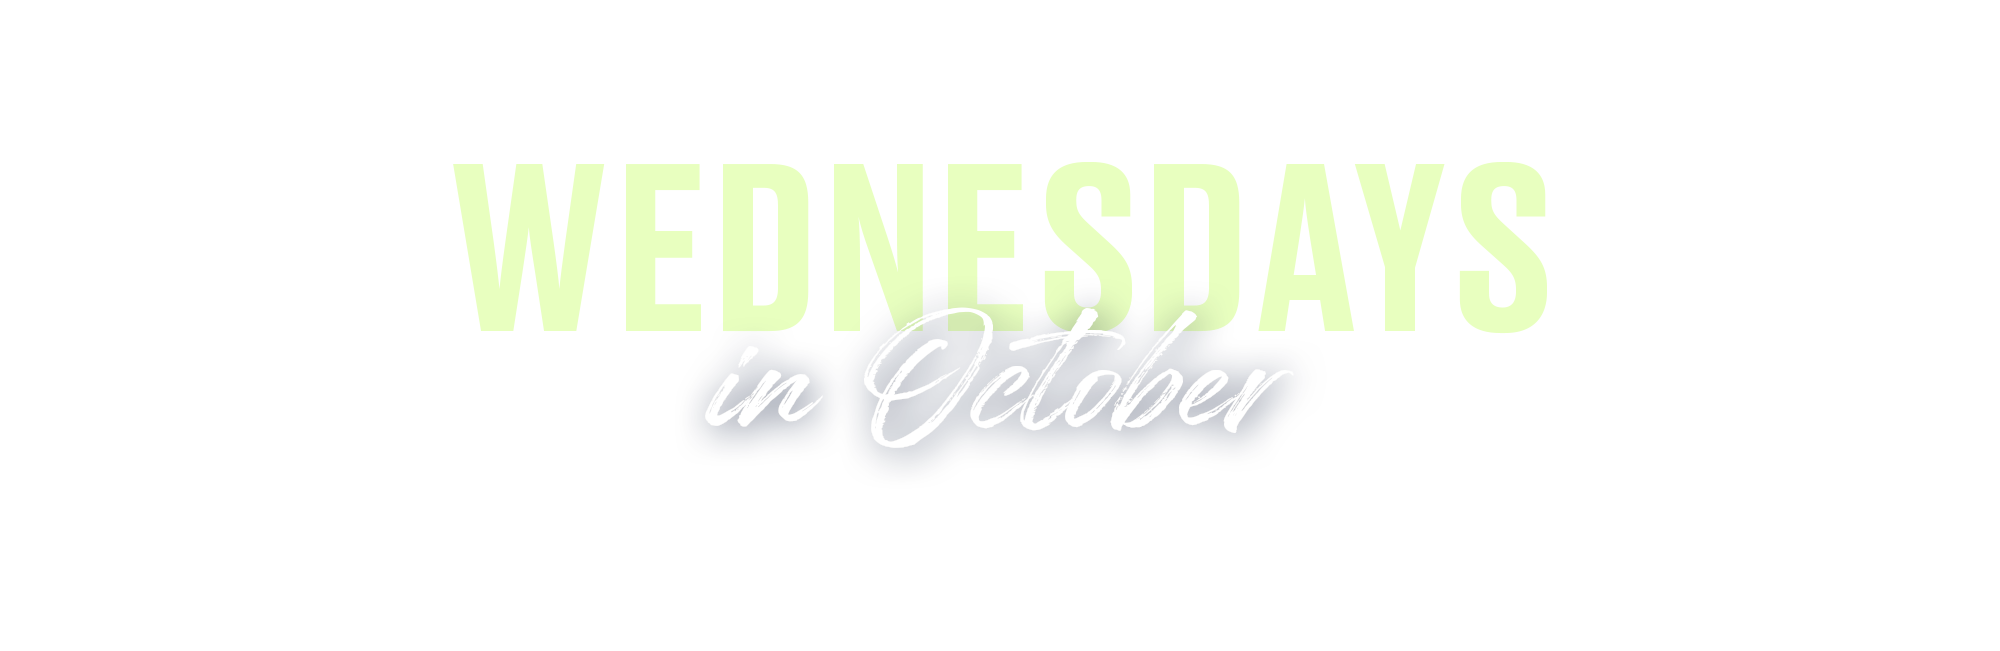 Wednesdays in October